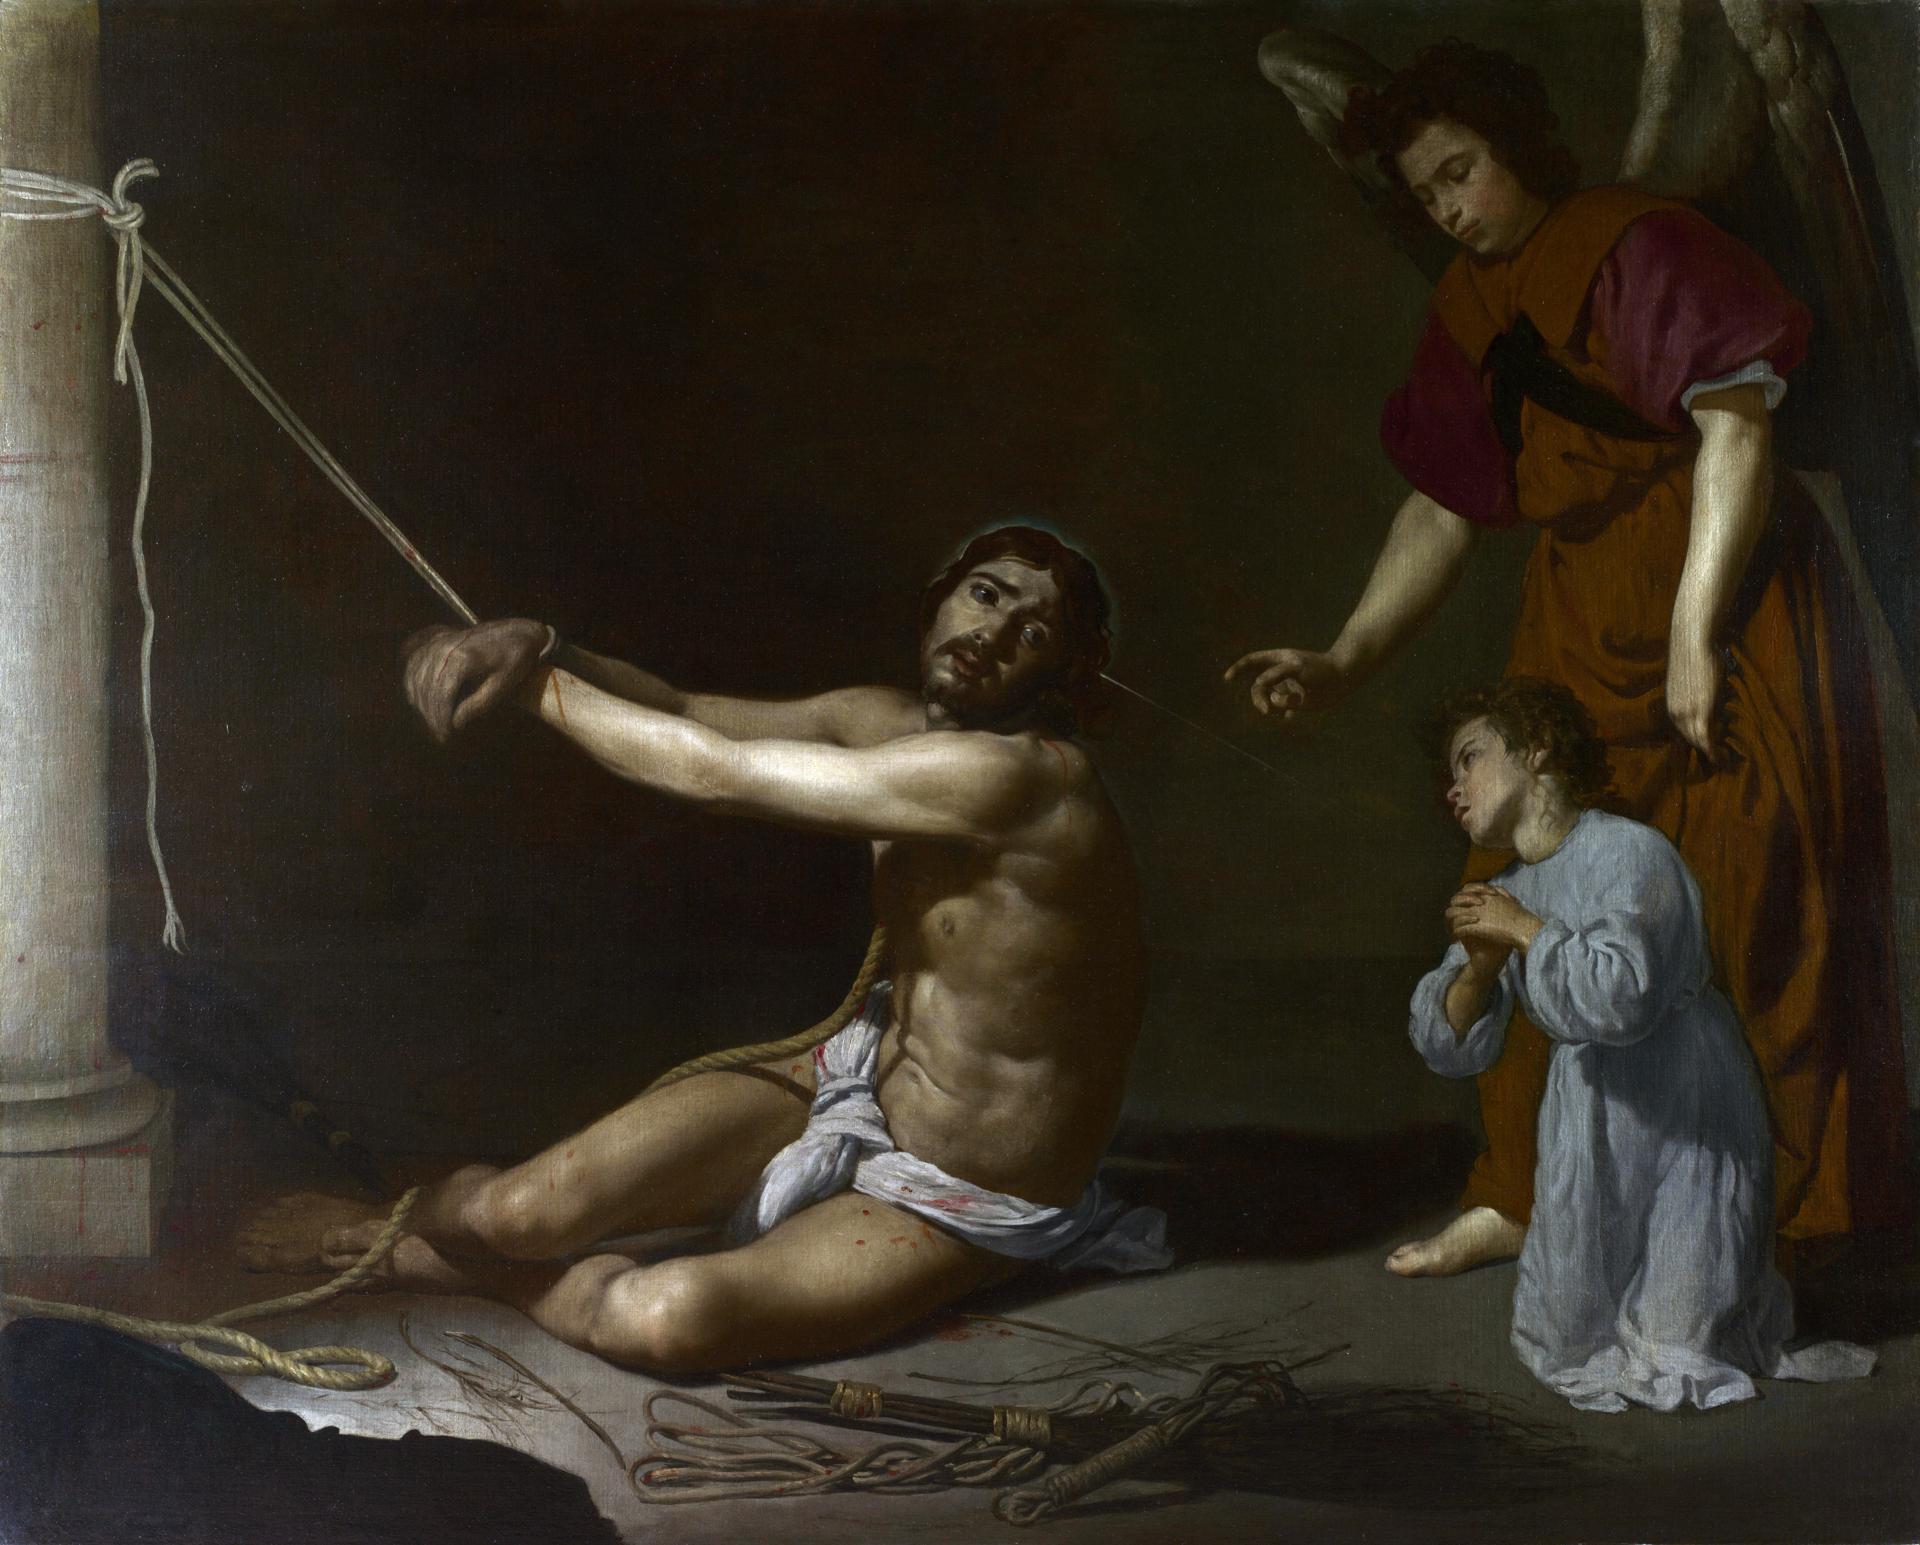 0025_委拉斯开兹_委拉斯开兹绘画作品集-Diego Velazquez - Christ contemplated by the Christian Soul_5251x4226PX_TIF_300DPI_65_0